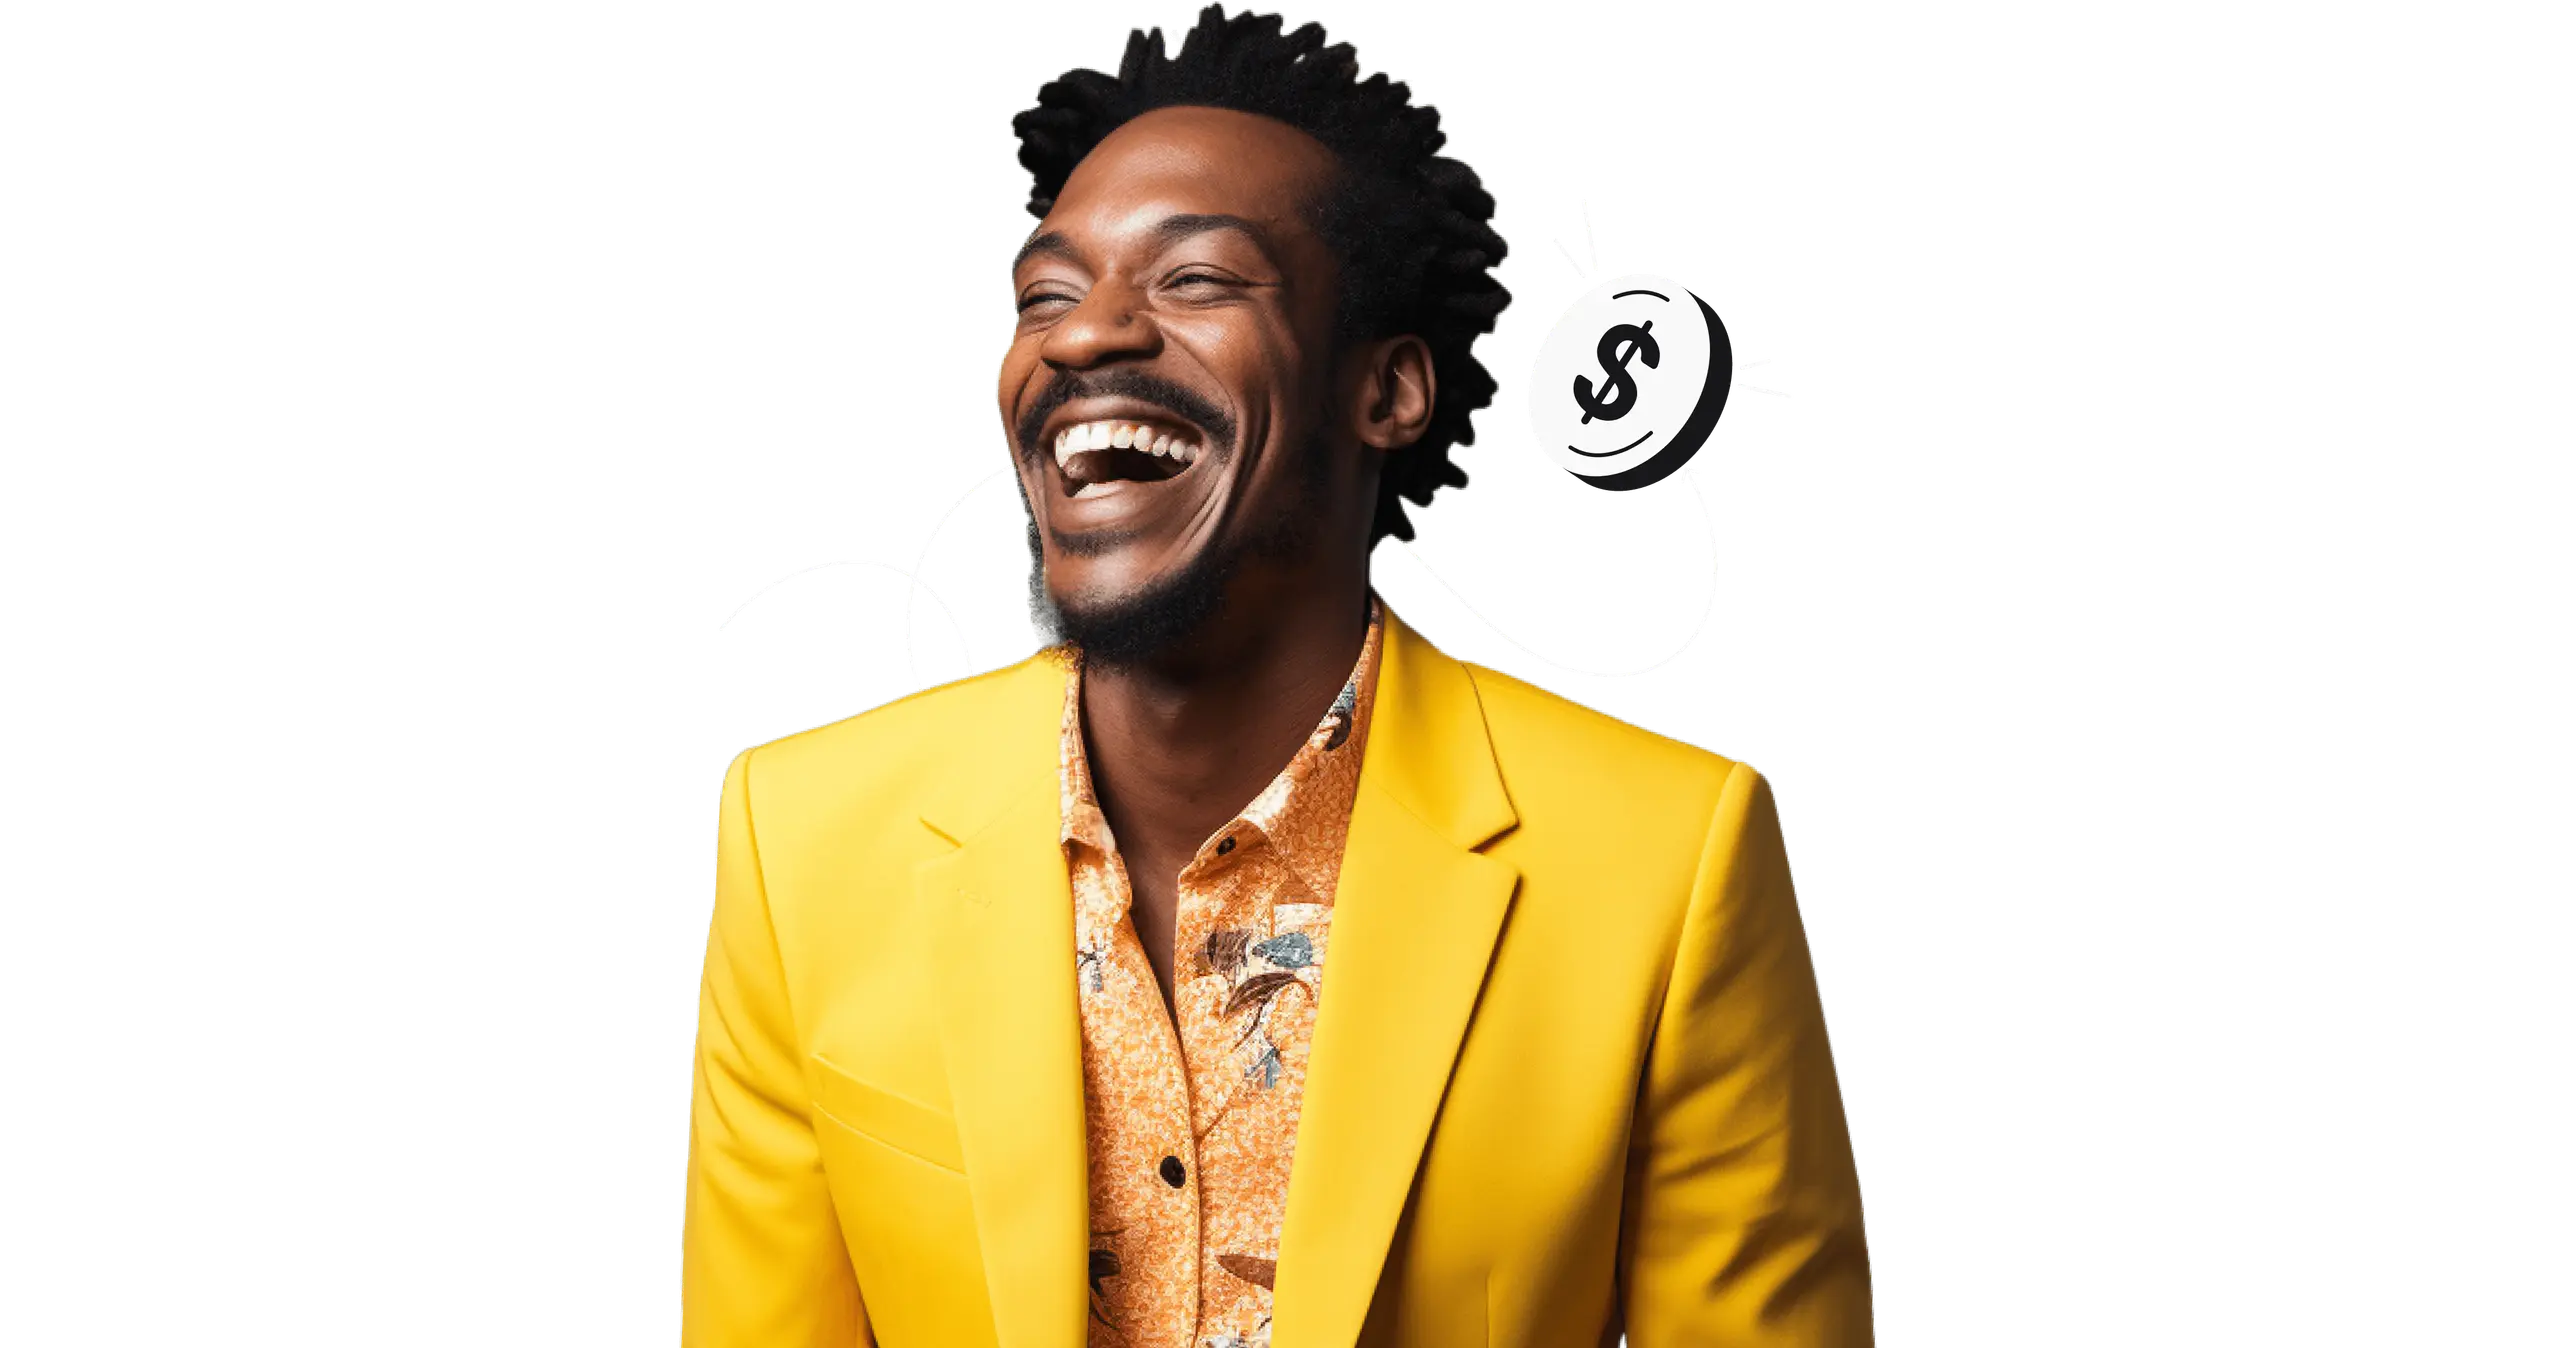 Un hombre sonriente con una chaqueta amarilla.